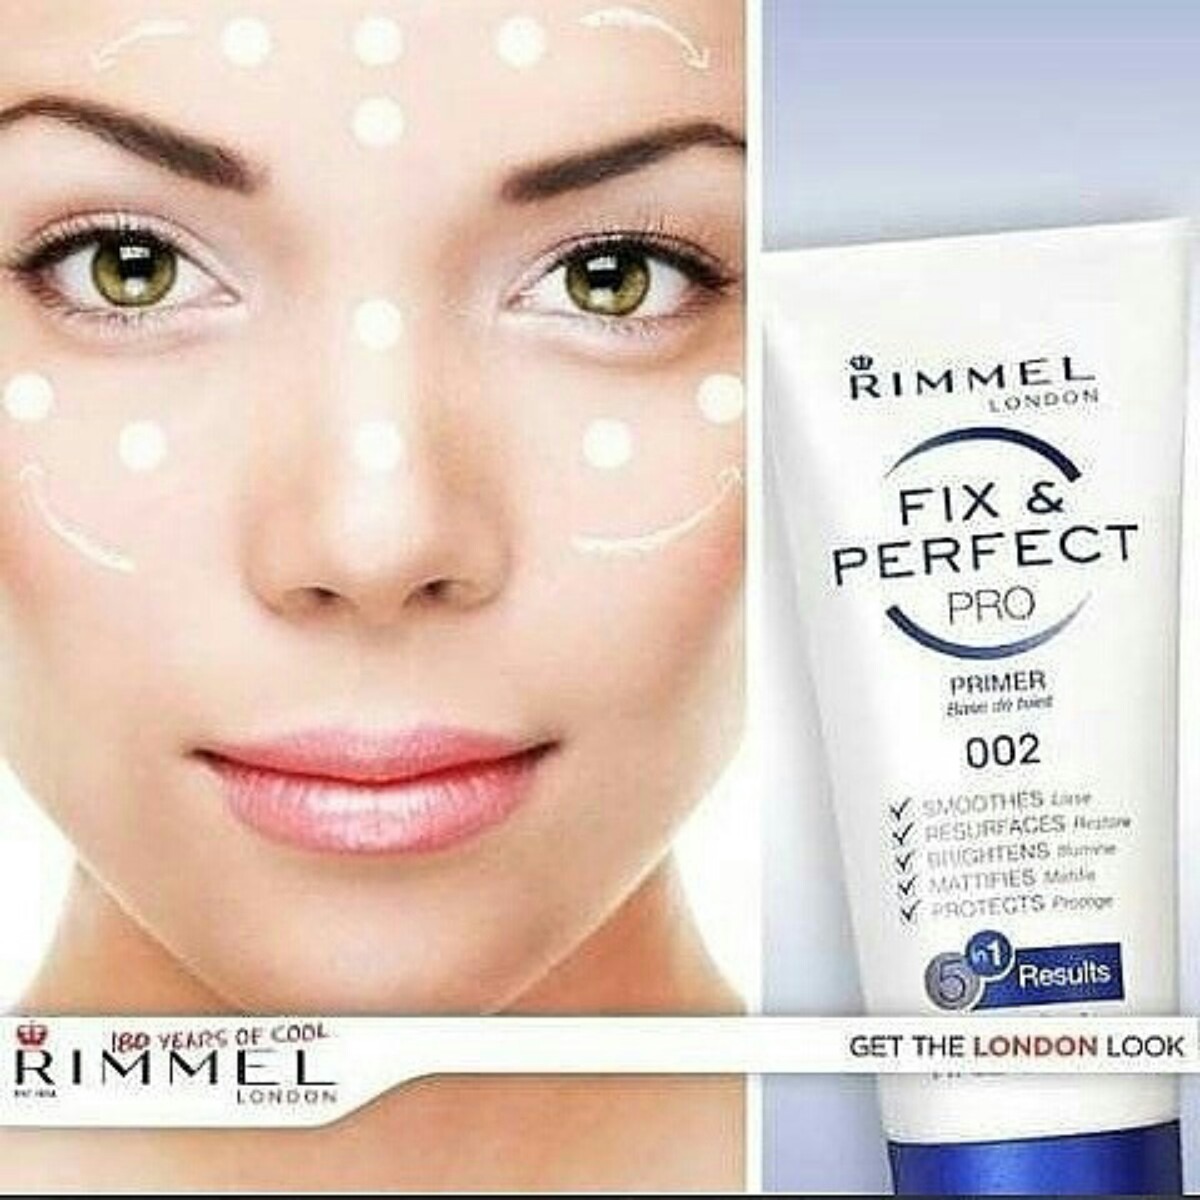 Rimmel Fix & Perfect Pro 002